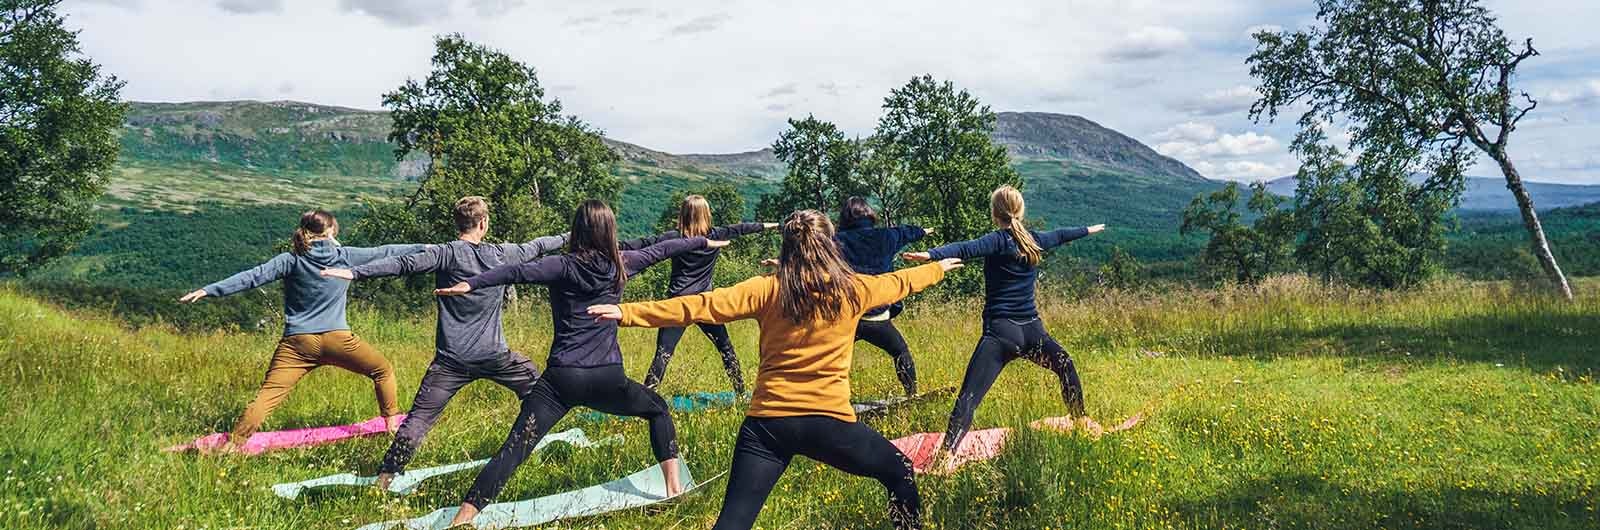 Grupp av kvinnor yogar tillsammans i naturen